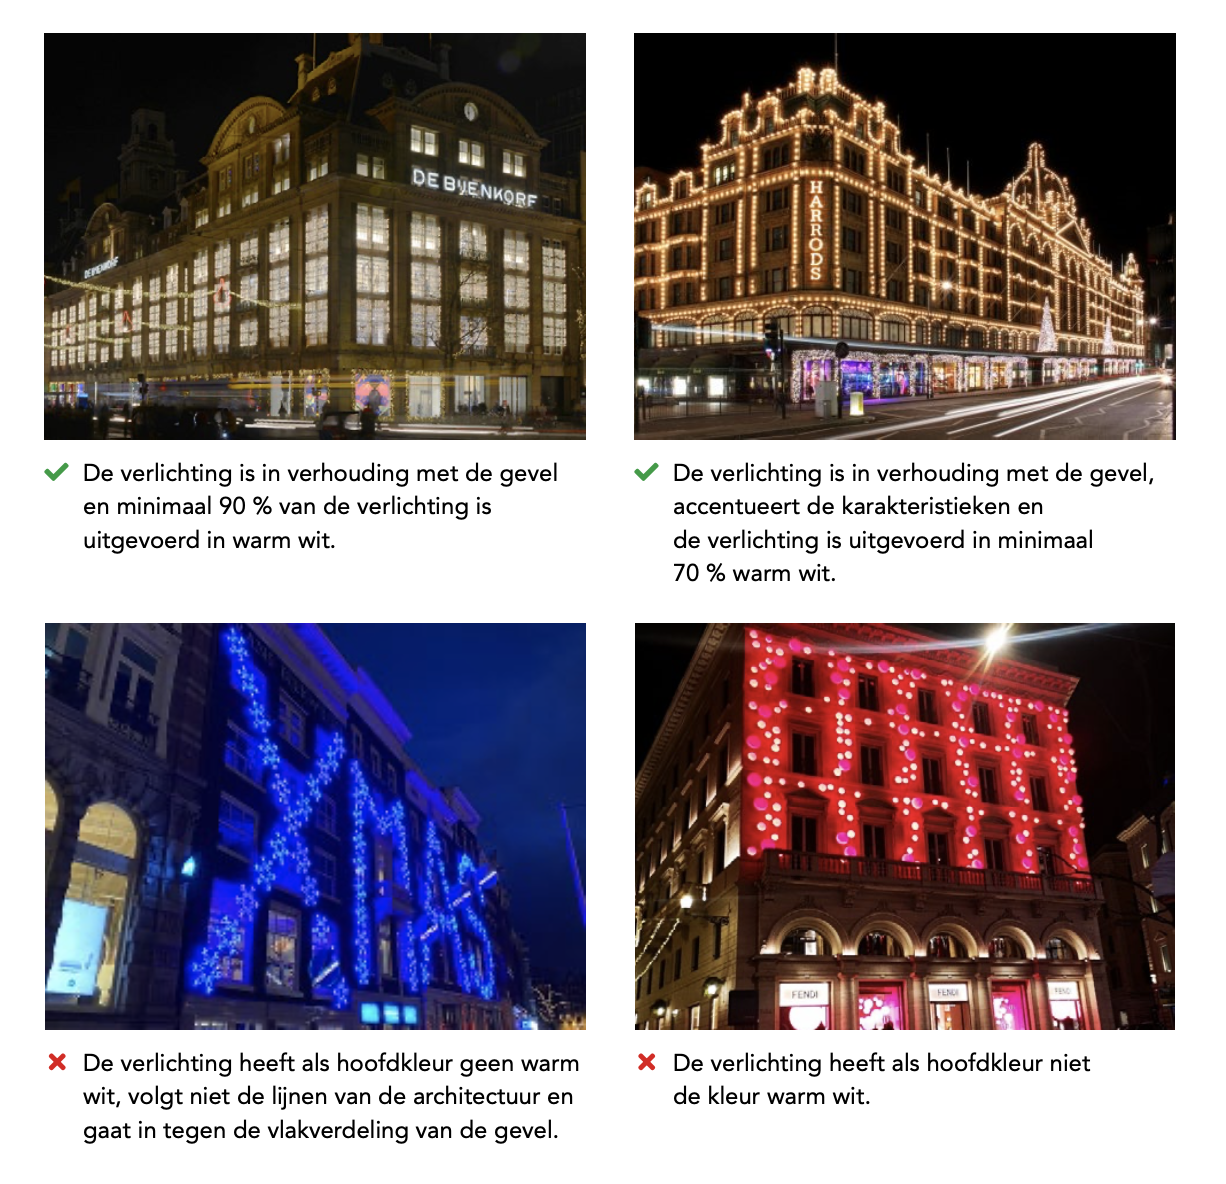 Лише LED ліхтарики: в Амстердамі ввели нові правила різдвяного декорування міста